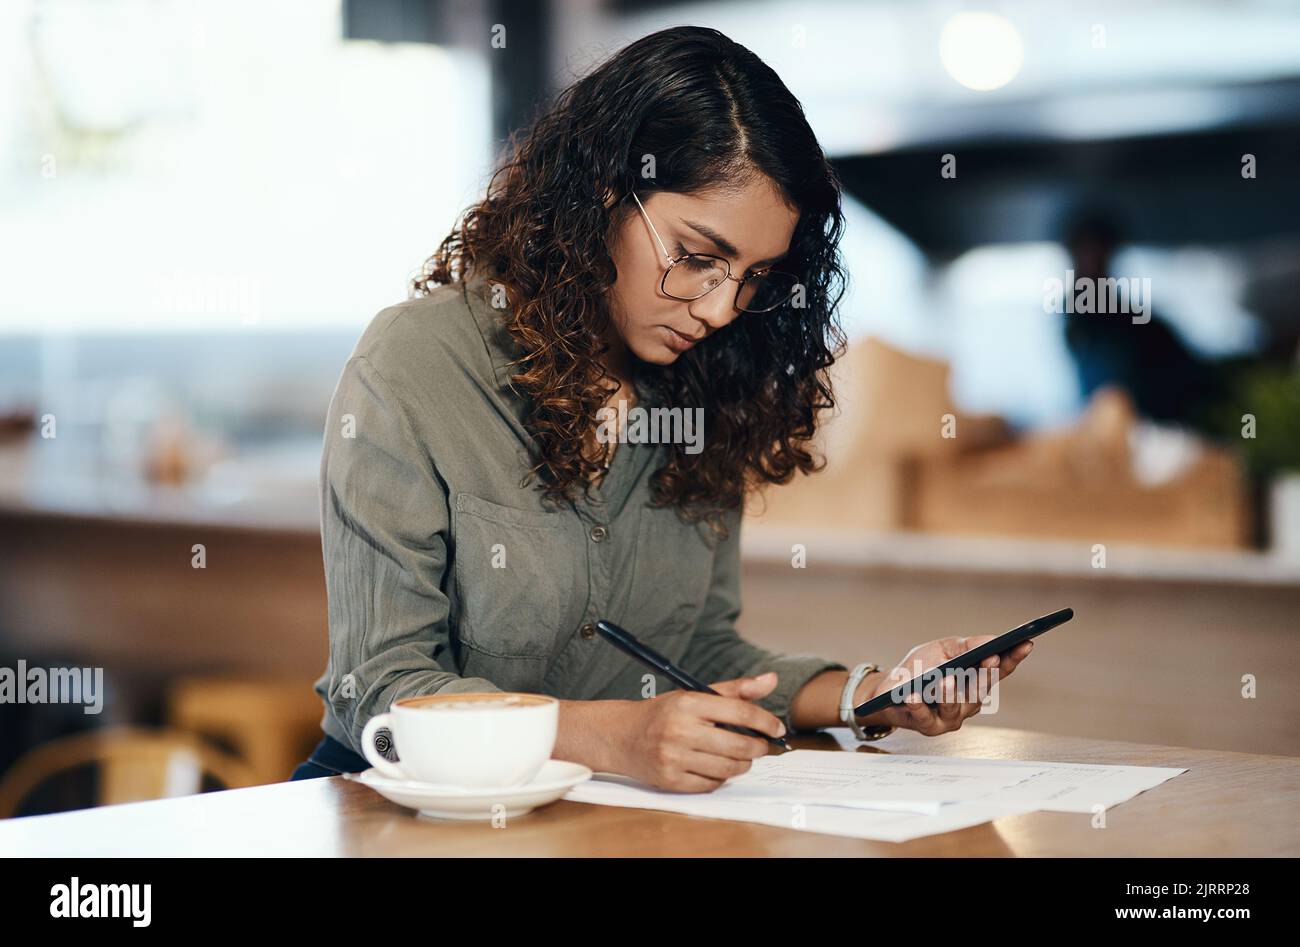 Inhaber oder Unternehmer eines Kleinunternehmens, der mit einem Telefon in der Hand Papier oder ein Dokument in einem Internetcafe oder Café ausfüllt. Junge Frau schreibt Stockfoto